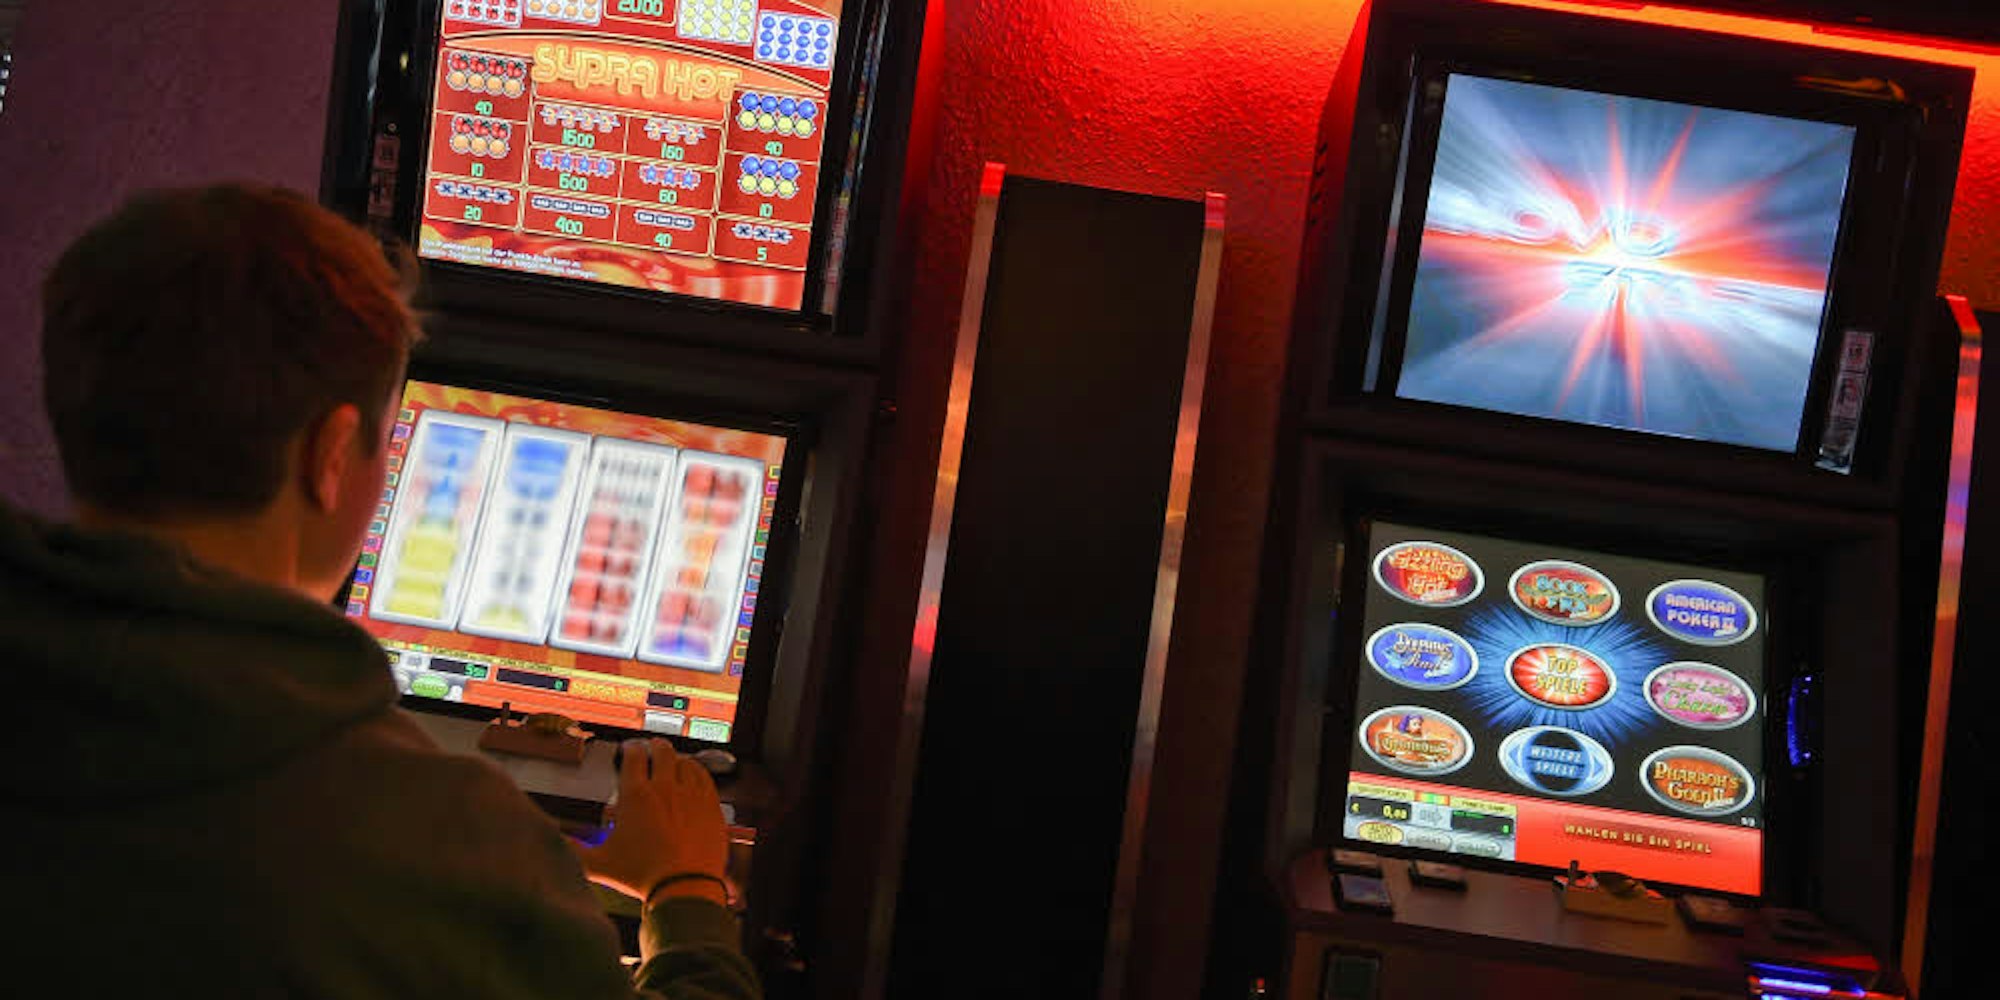 Die Steuer auf Spielautomaten ist eigentlich eine lukrative Einnahmequelle für die Stadt. Doch beim Eintreiben hinkt sie hinterher.